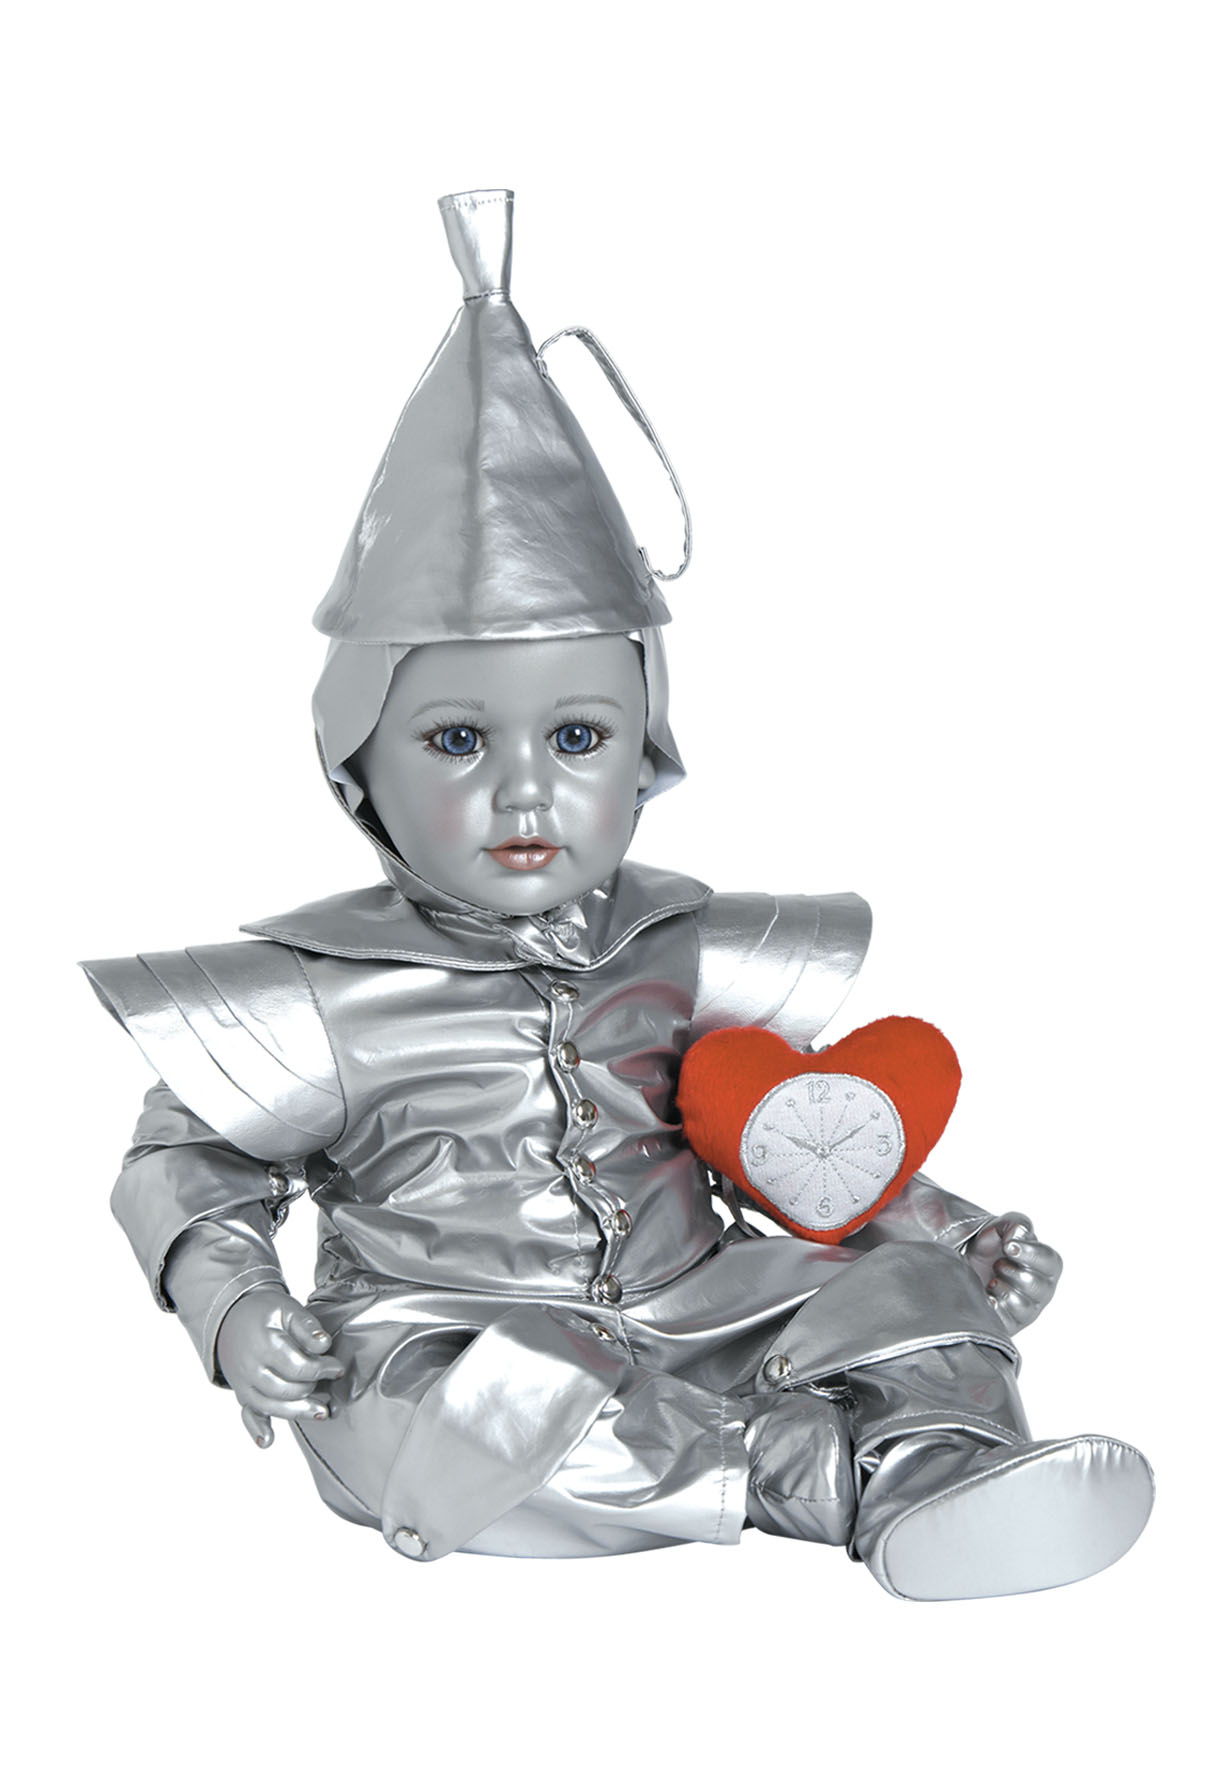 Кукла Adora Железный Дровосек из серии Волшебник страны ОЗ, 20897 